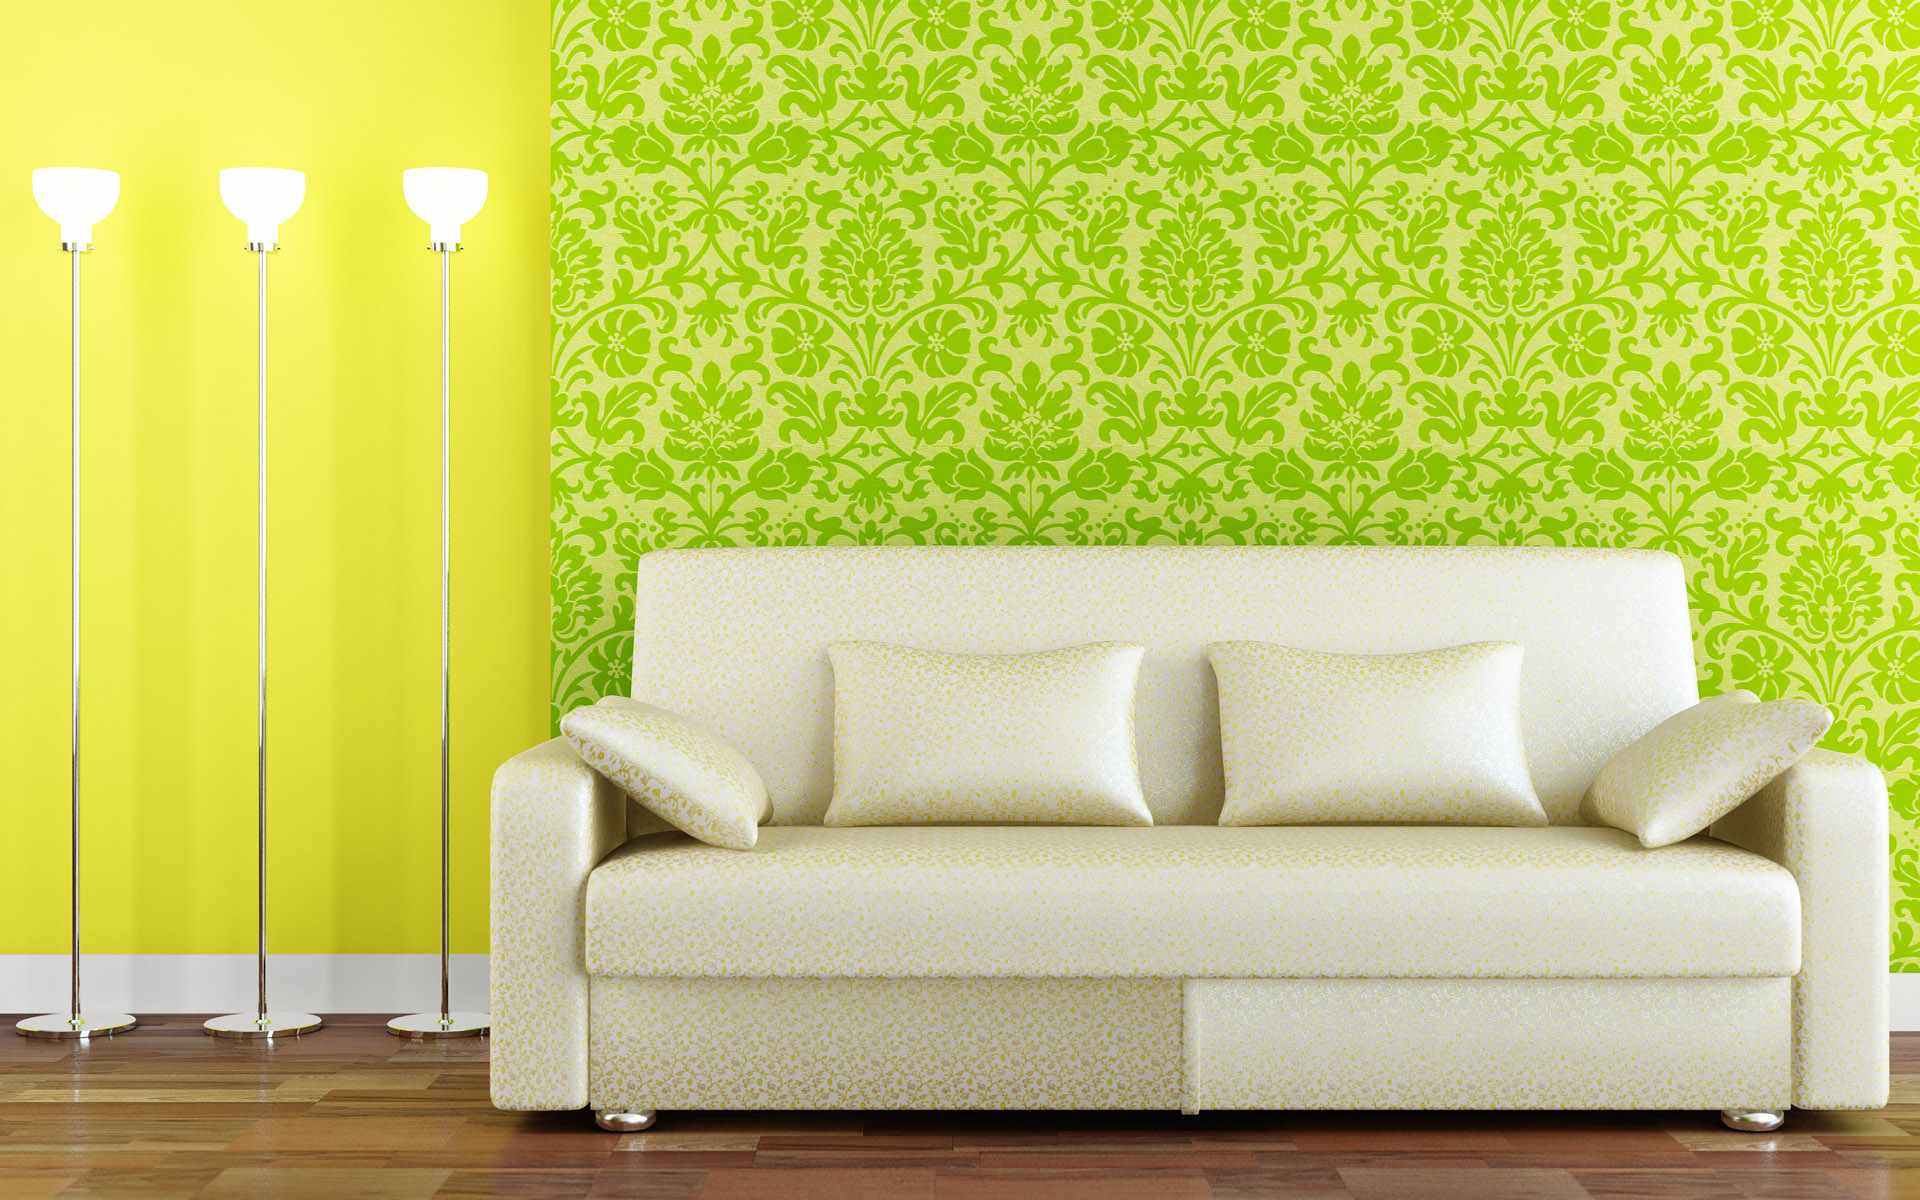 Wallpaper Designs For Living Room
 Modern Living Room Wallpaper Design Ideas FresHOUZ